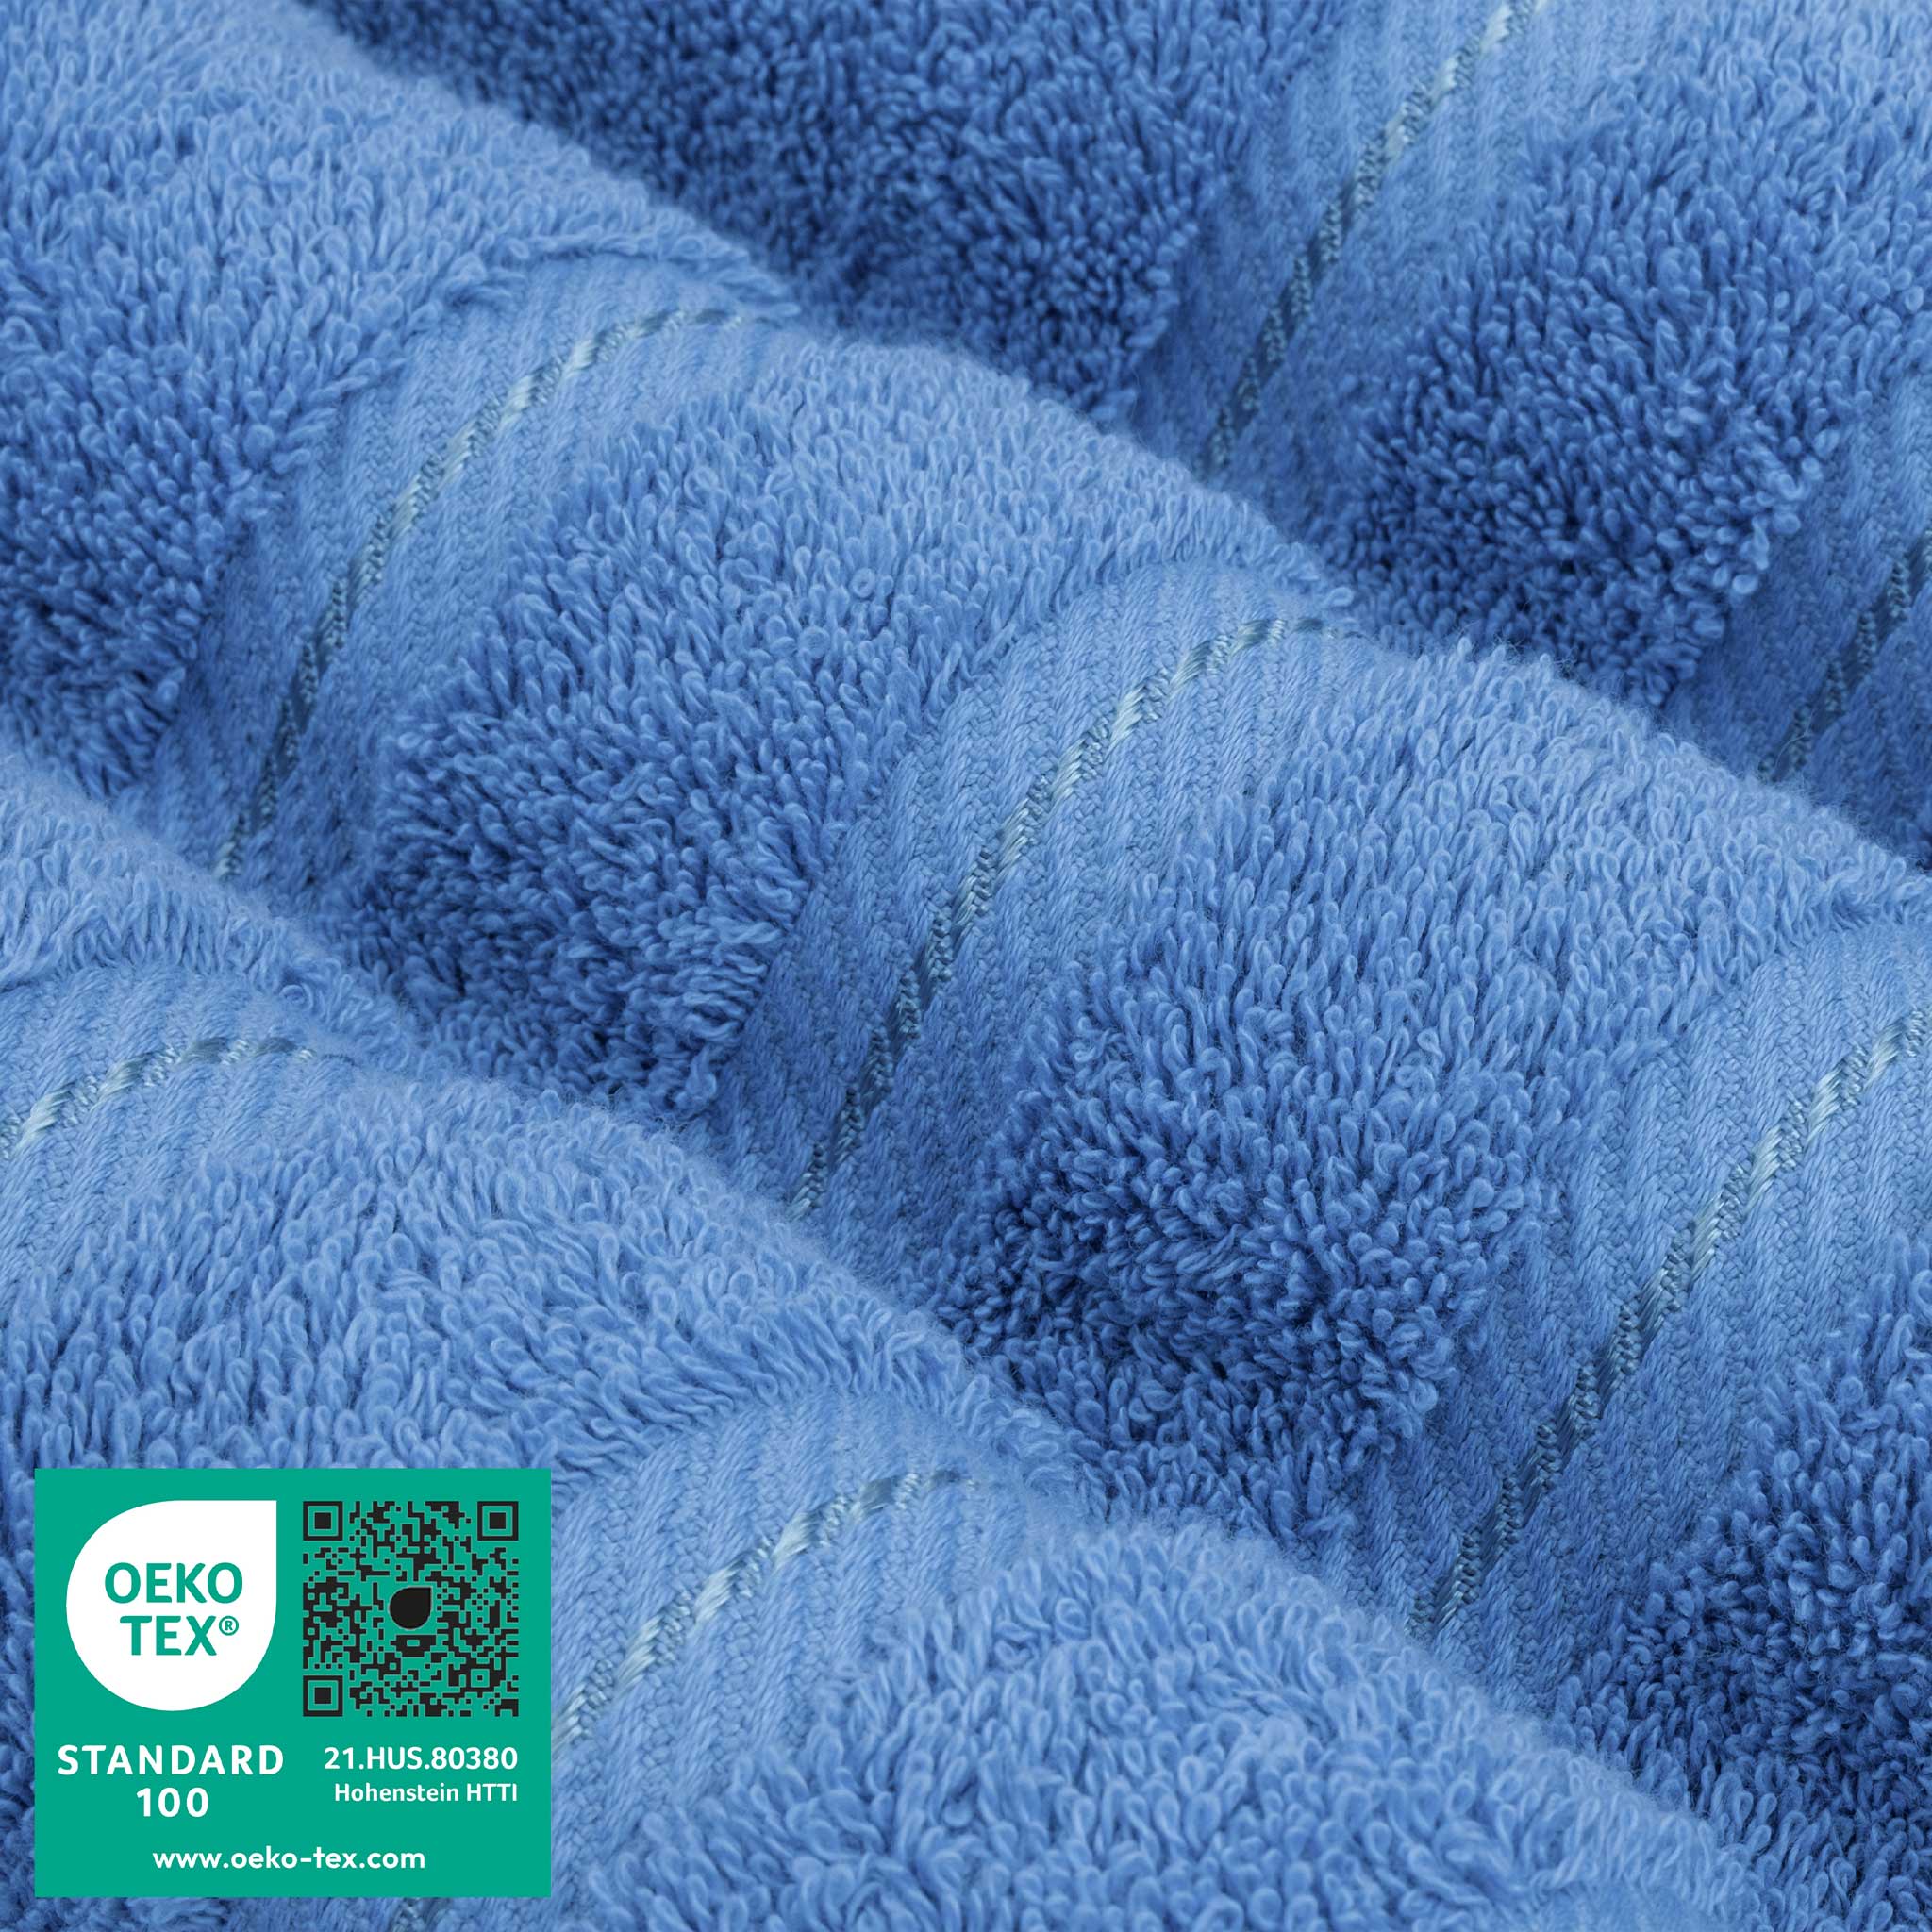 American Soft Linen - 6 Piece Turkish Cotton Bath Towel Set - Electric-Blue - 3